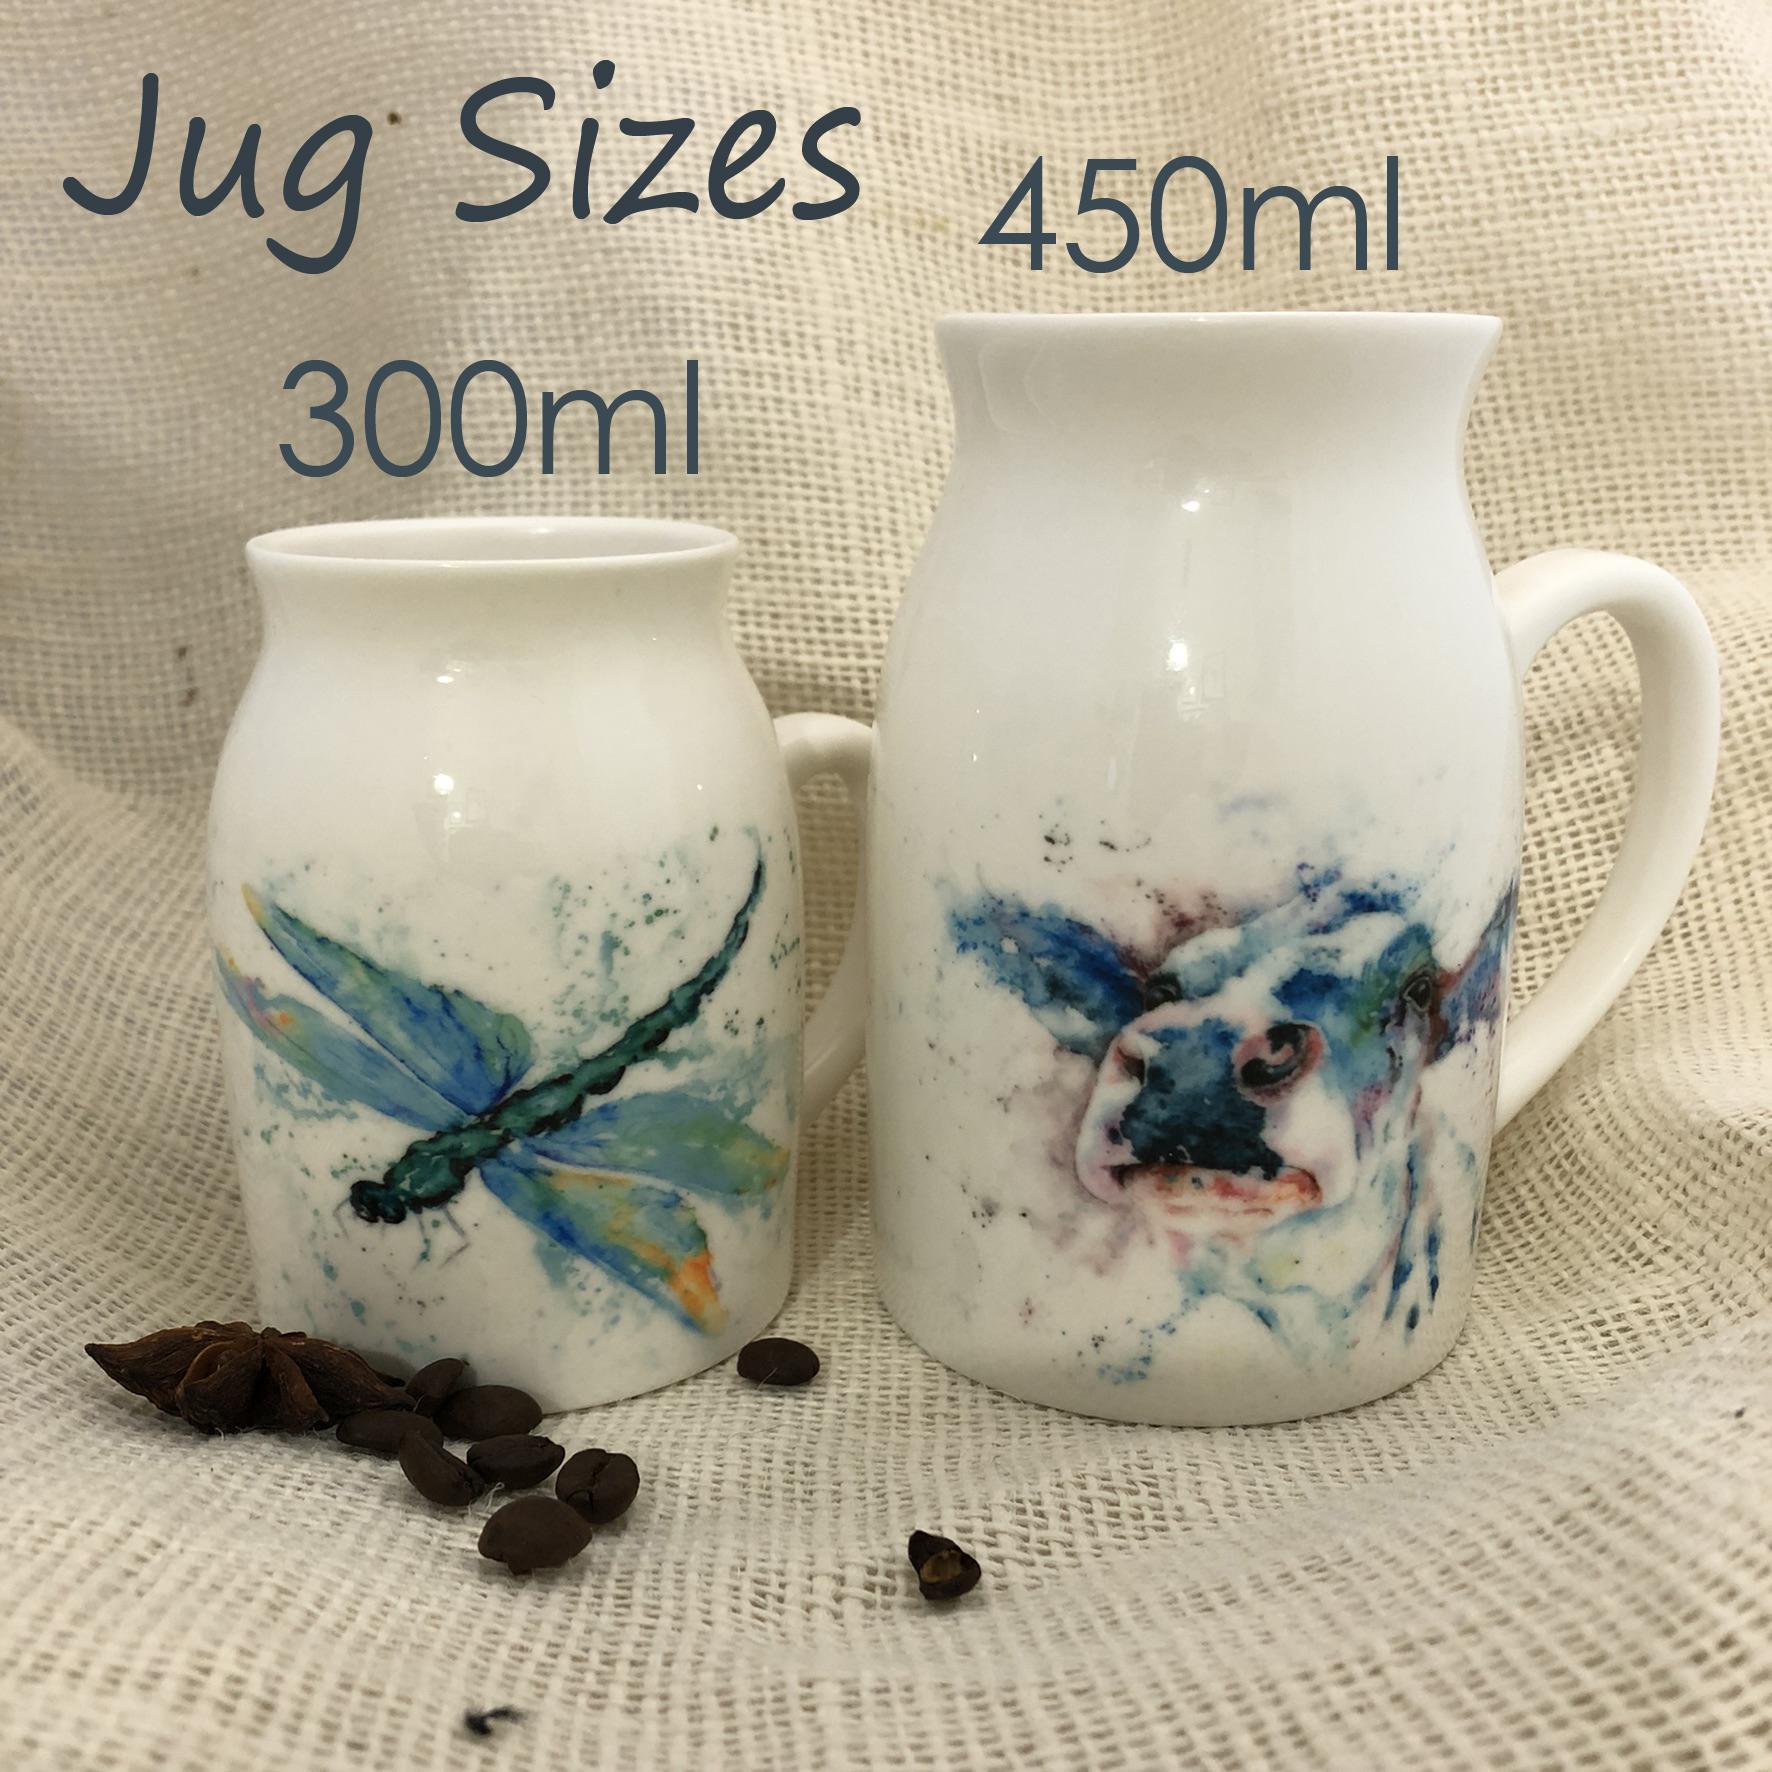 jug sizes